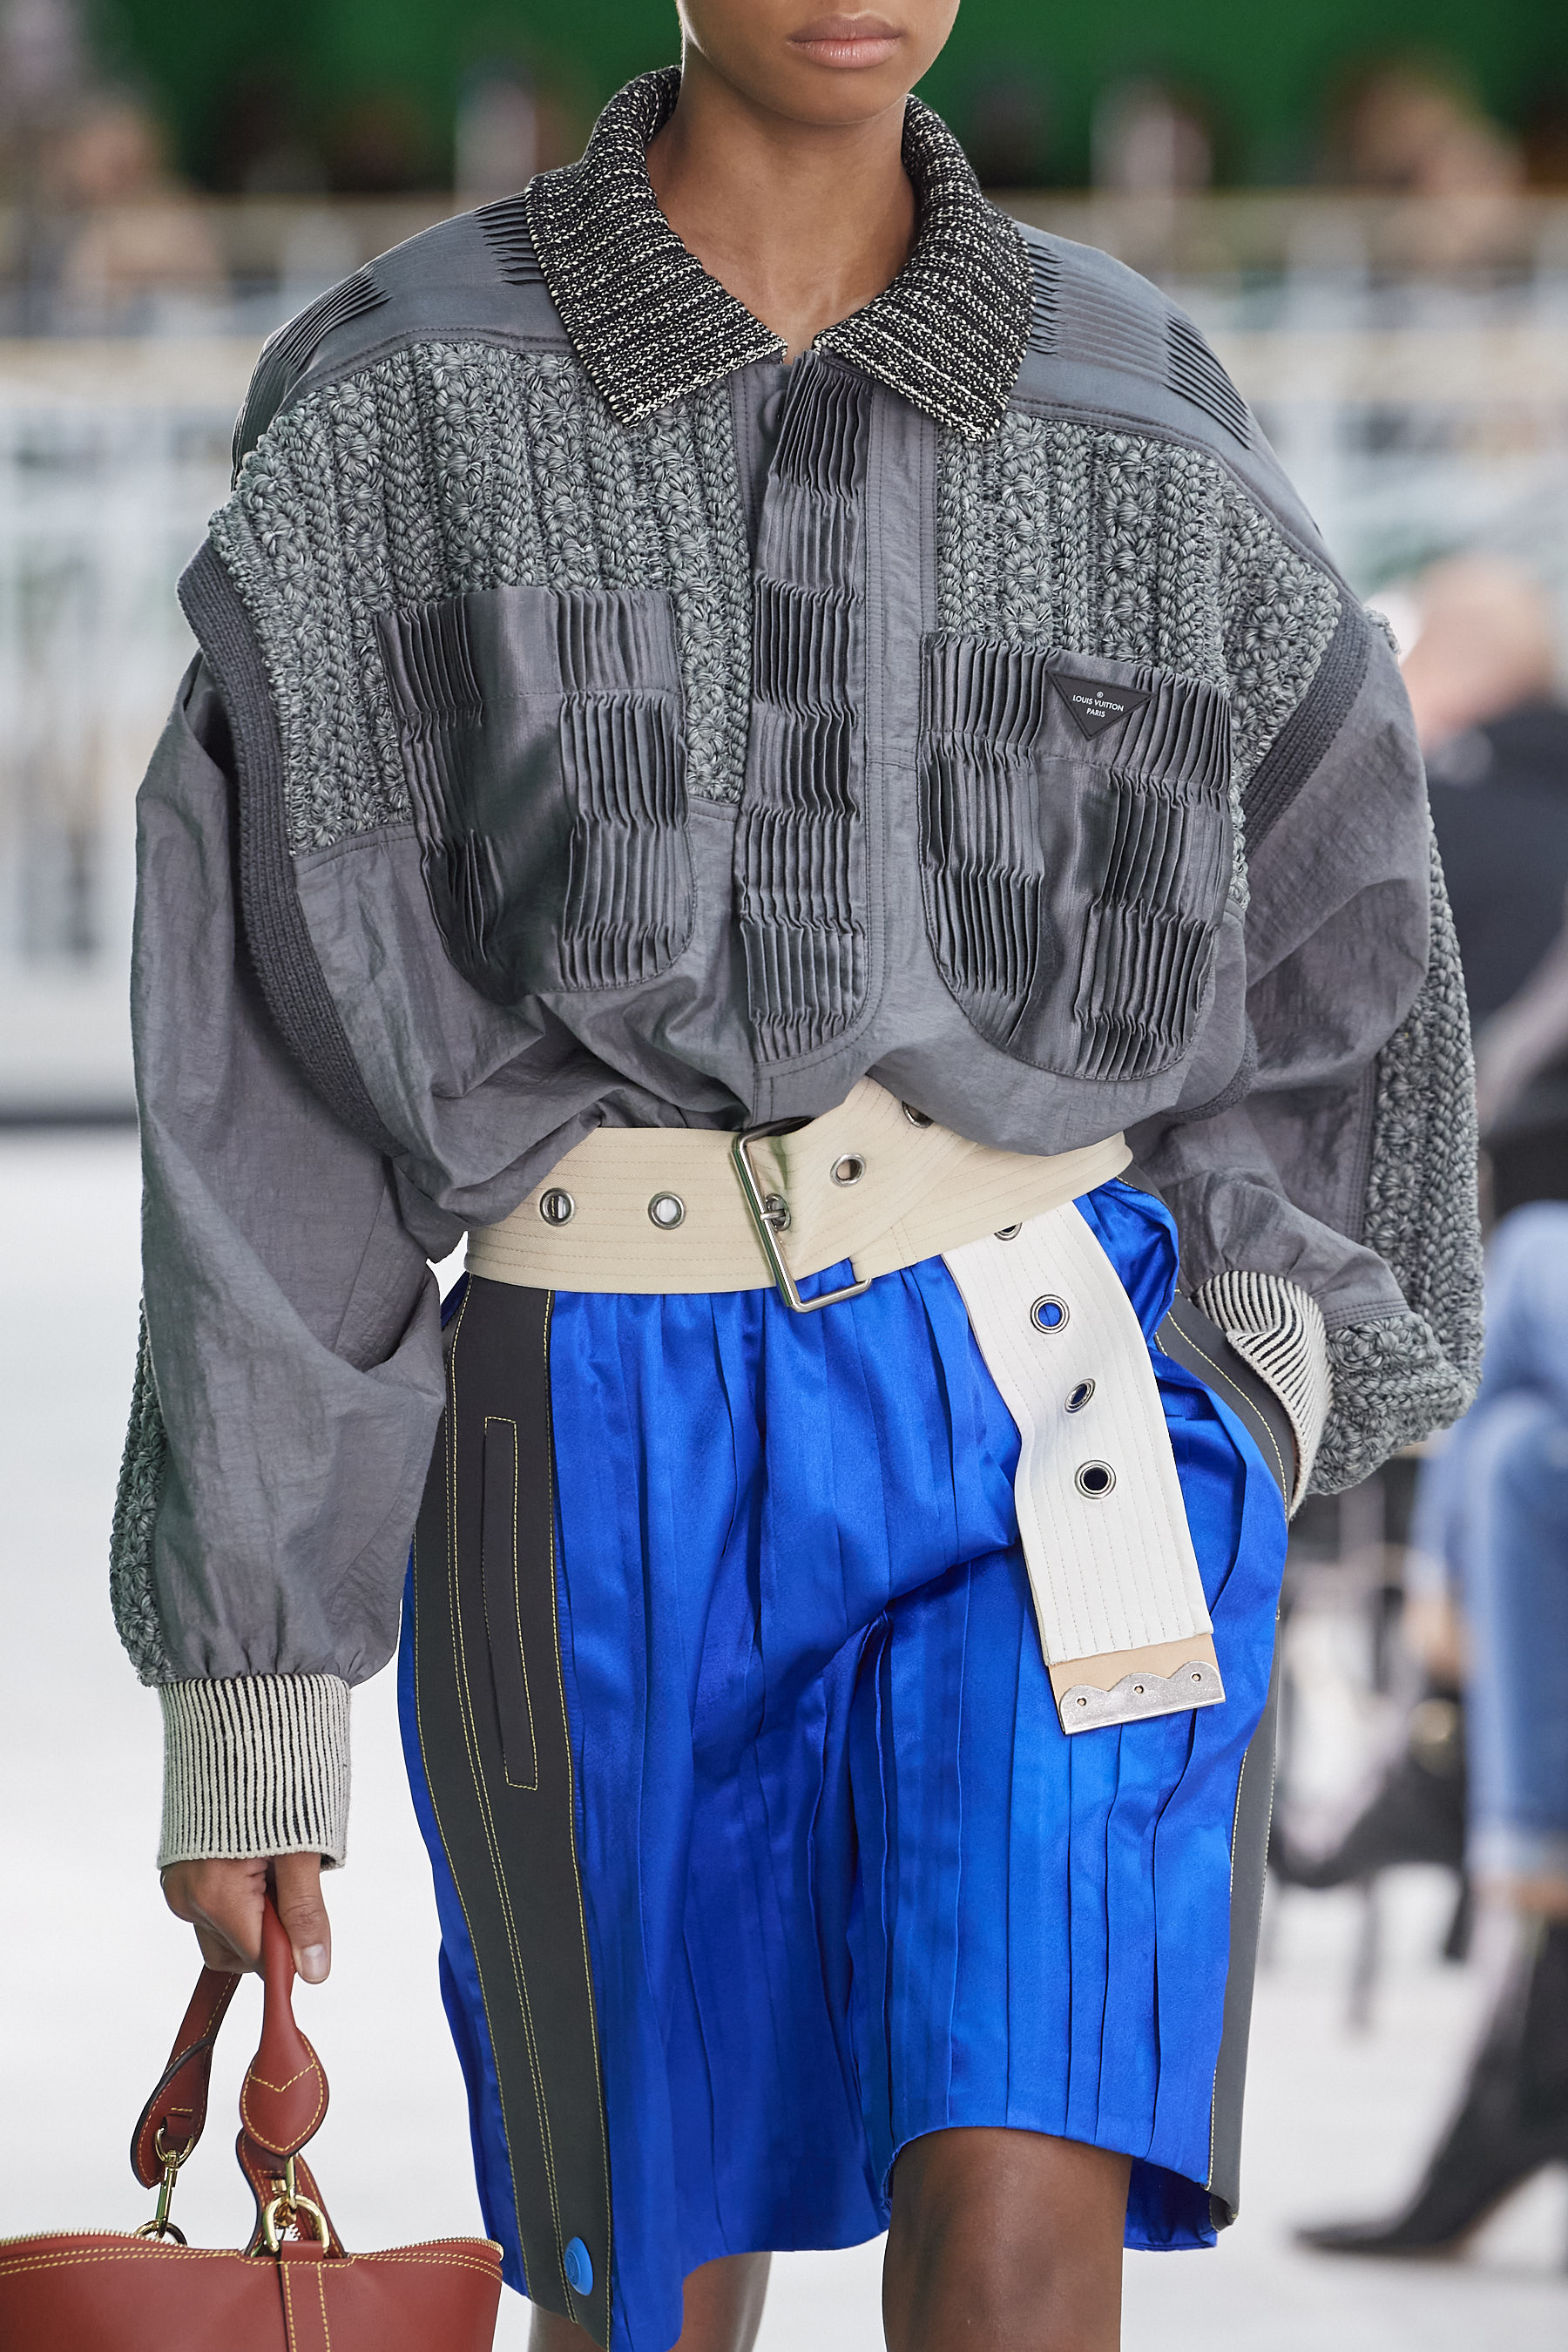 Louis Vuitton Spring 2020 Men's Fashion Show Details, The Impression